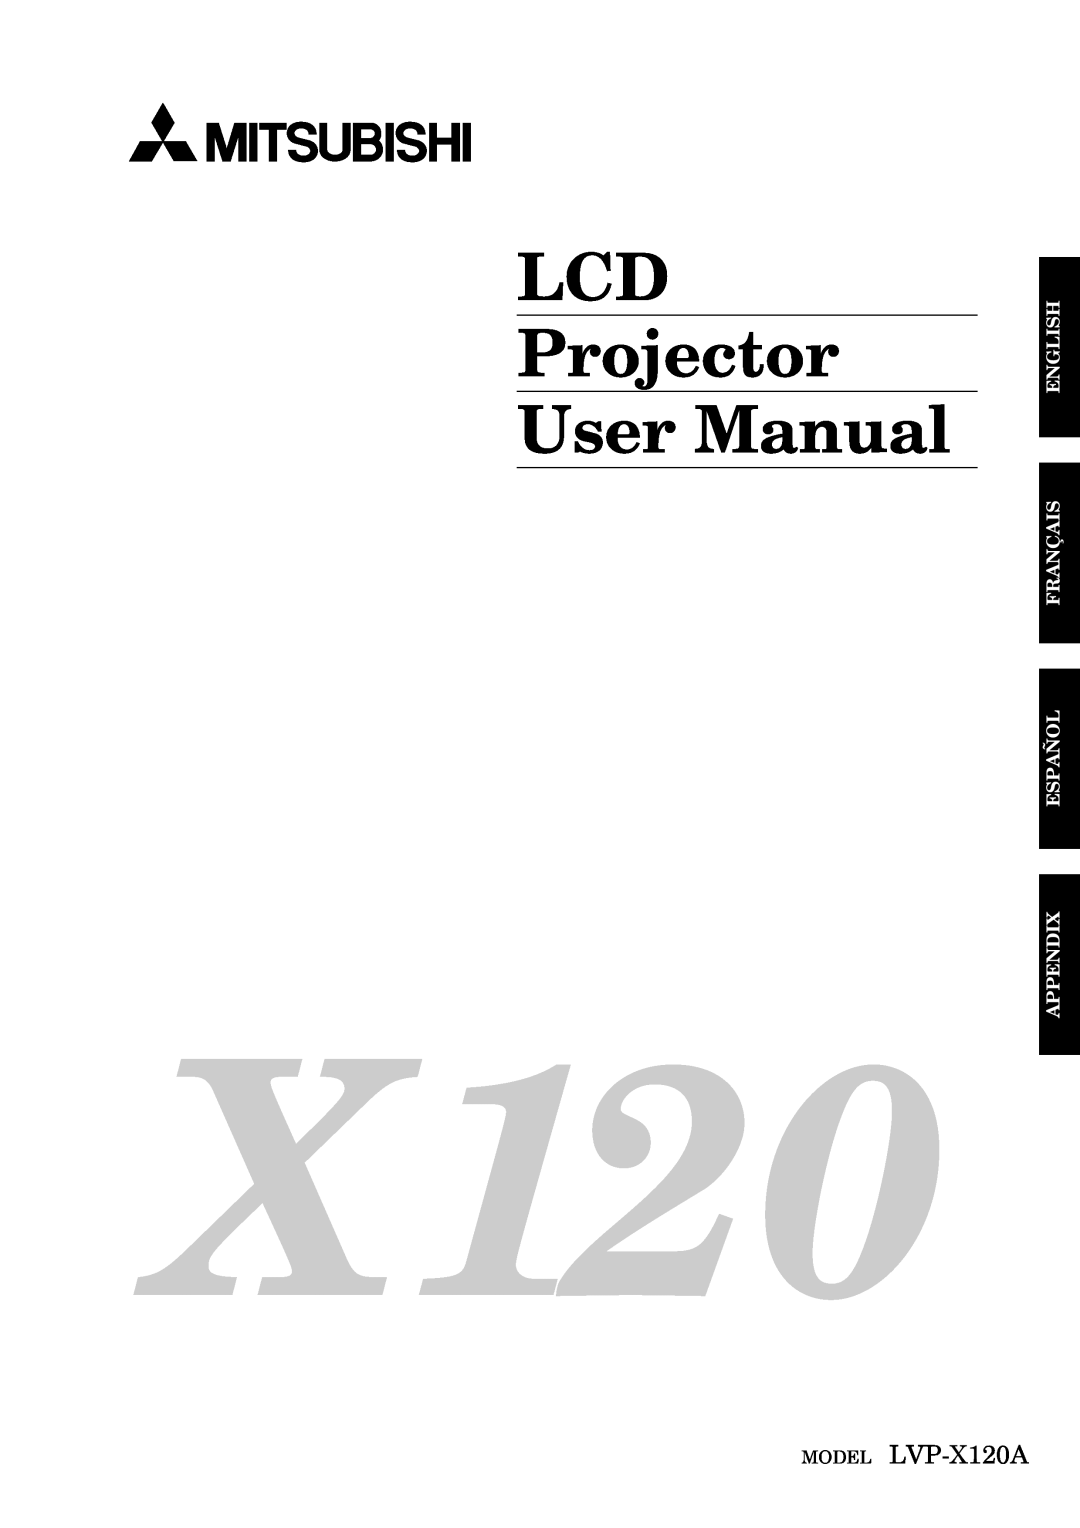 Mitsubishi Electronics user manual LCD Projector User Manual, MODEL LVP-X120A, English Français Español Appendix 